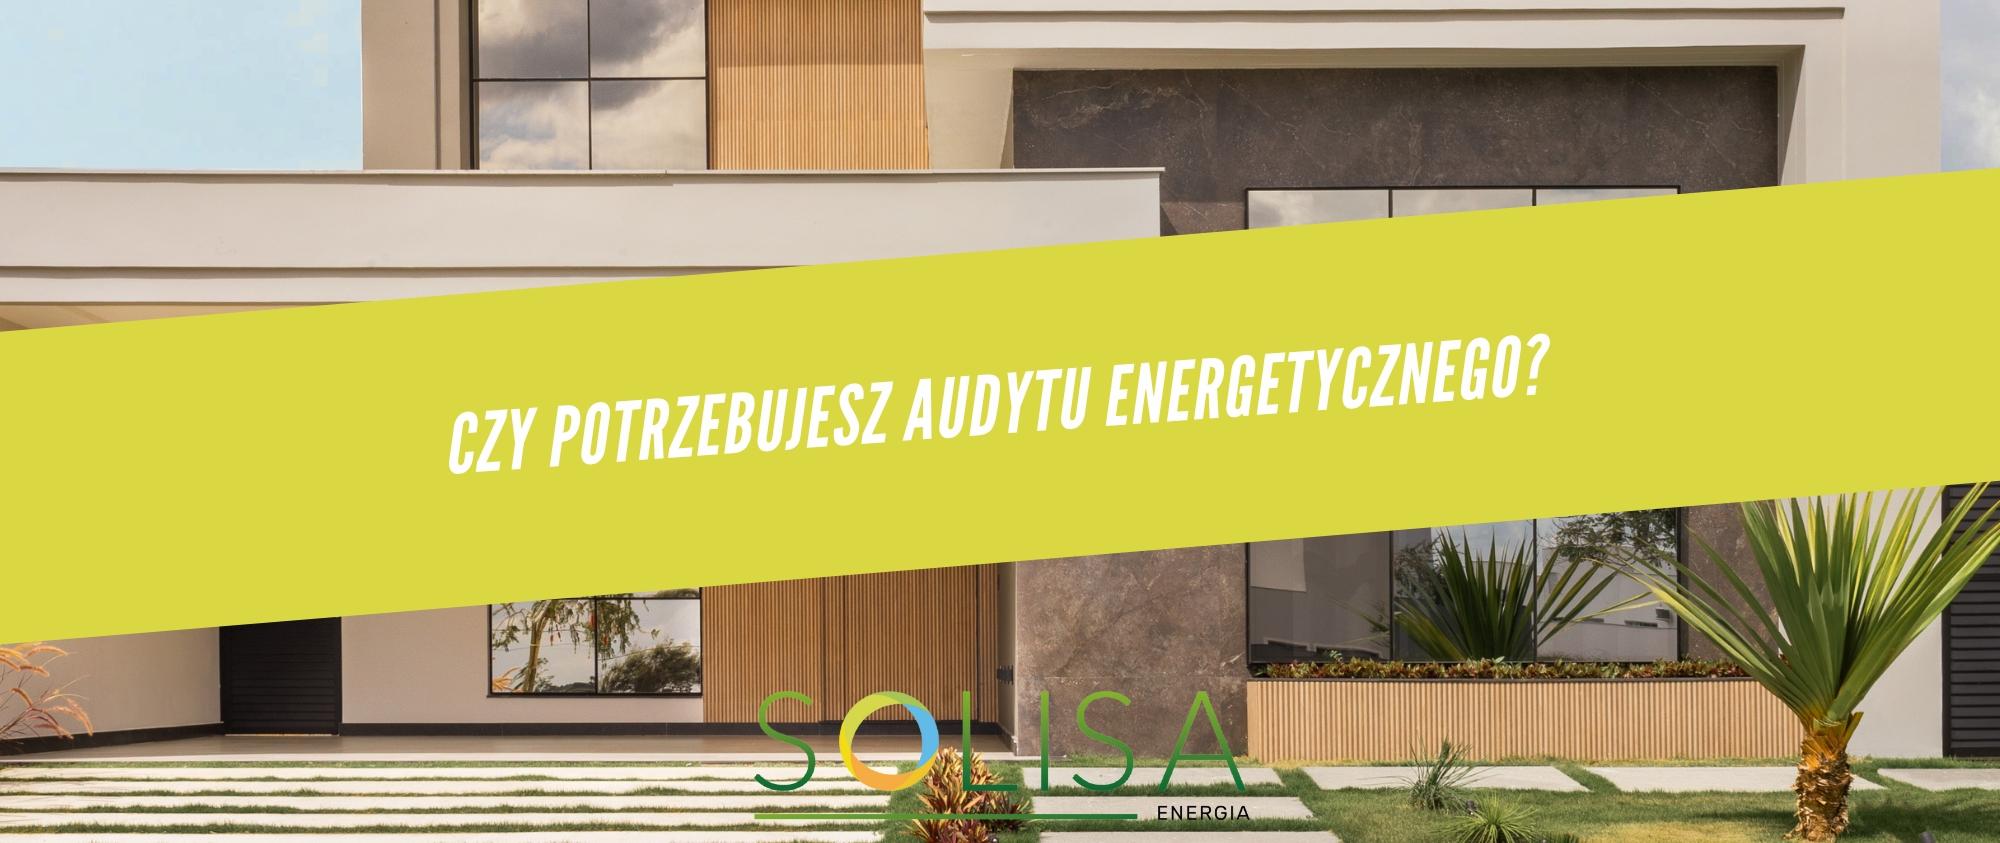 Czy potrzebujesz audytu energetycznego? 